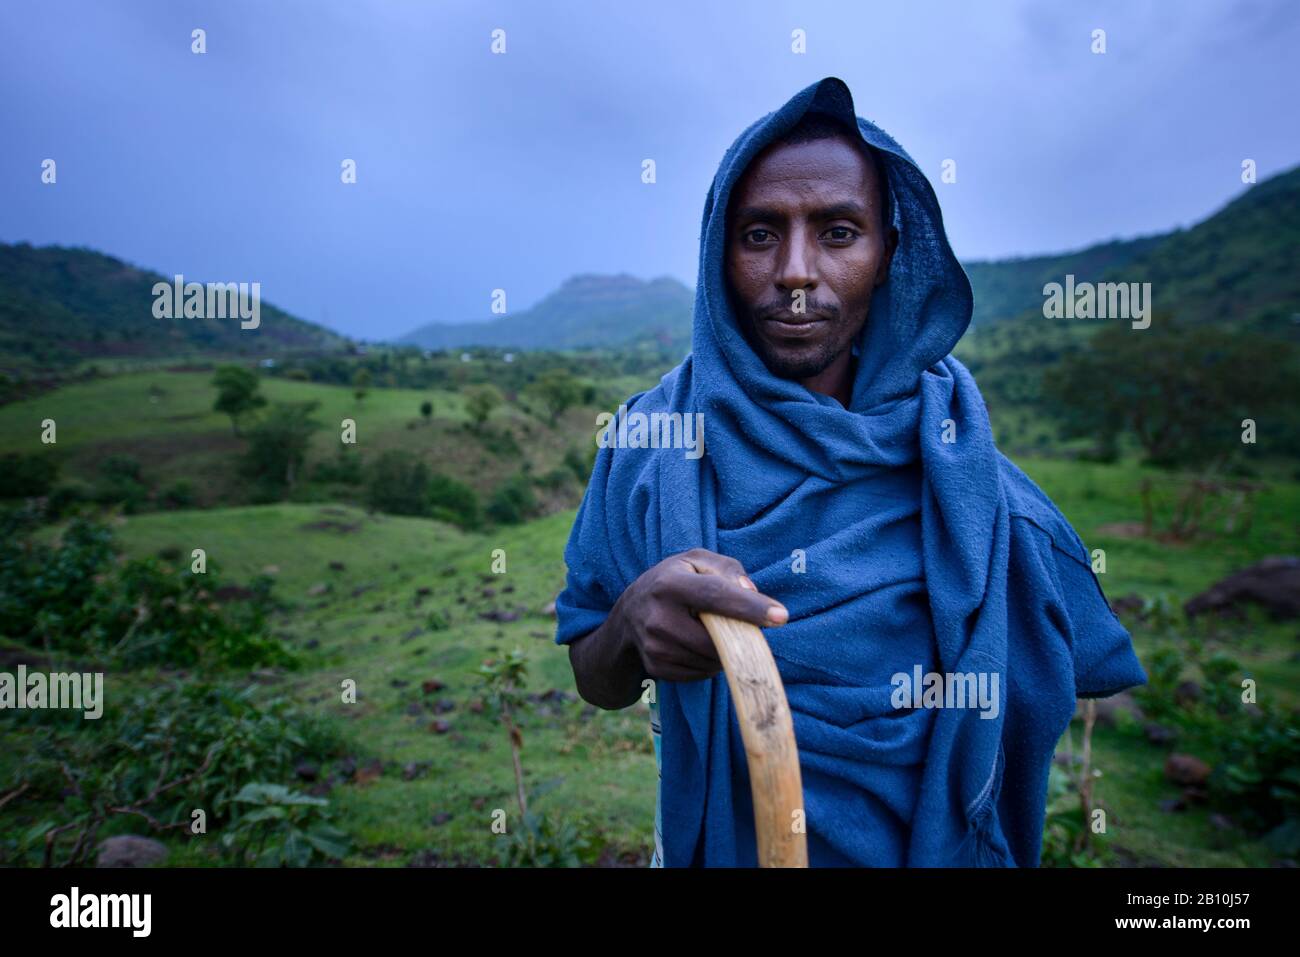 Ethiopian Orthodox Church priest wandering through the mountains, Ethiopia Stock Photo